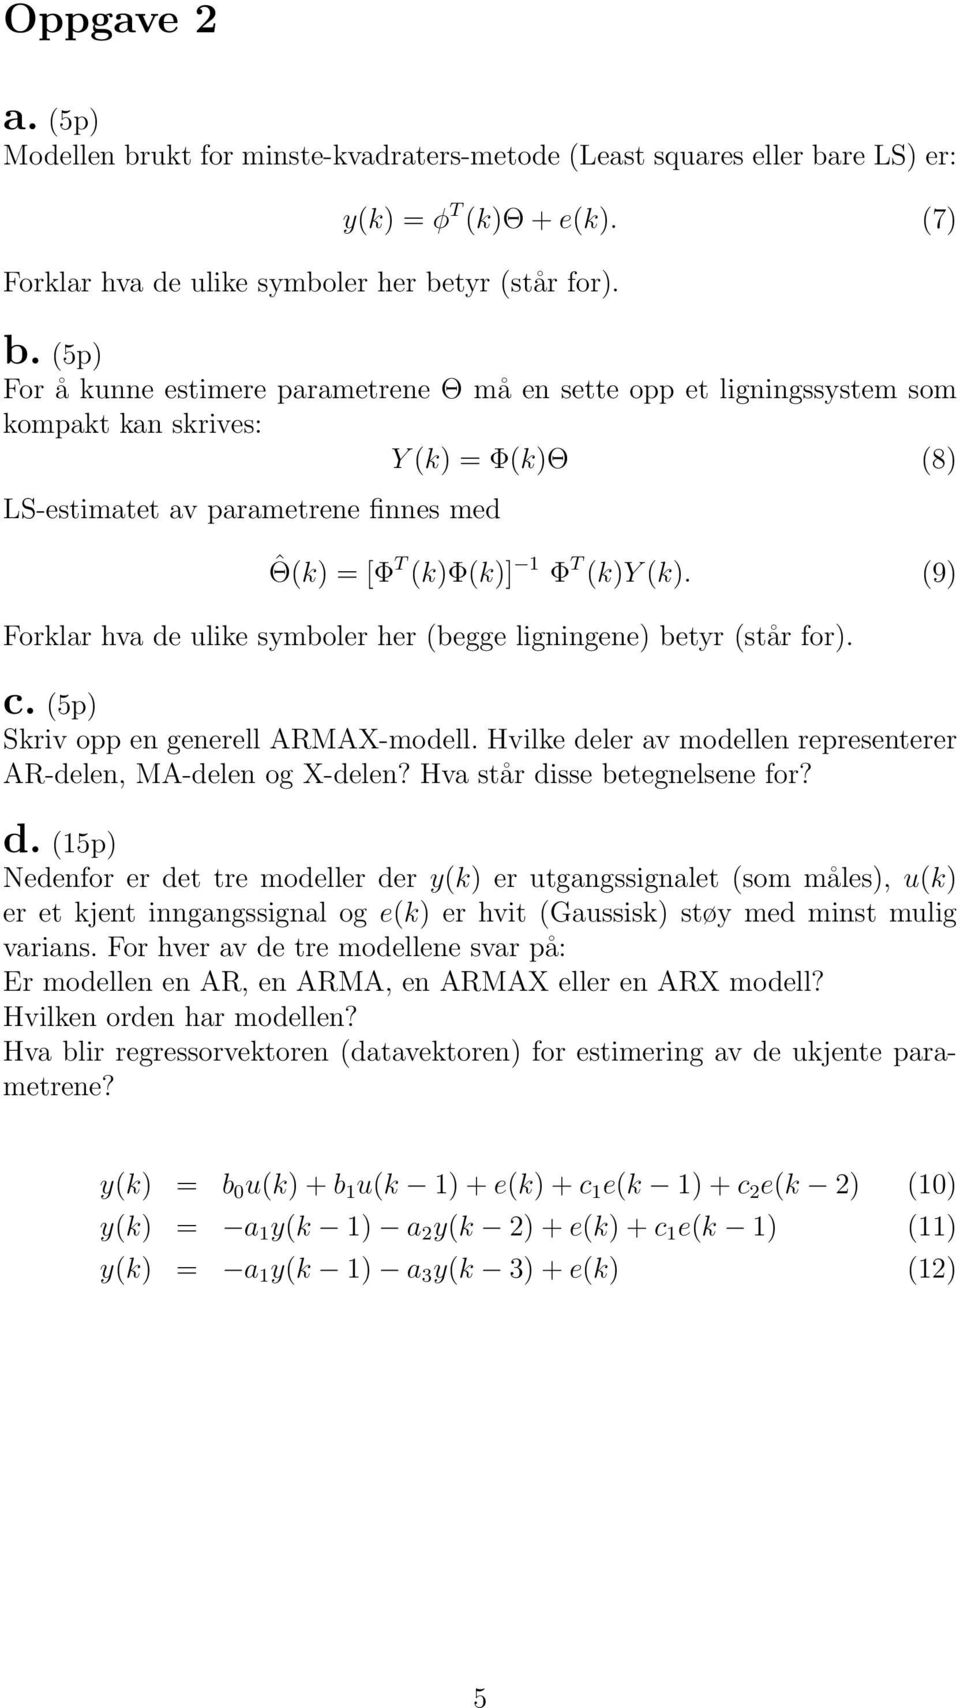 (9) Forklar hva de ulike symboler her (begge ligningene) betyr (står for). c. (5p) Skriv opp en generell ARMAX-modell. Hvilke deler av modellen representerer AR-delen, MA-delen og X-delen?